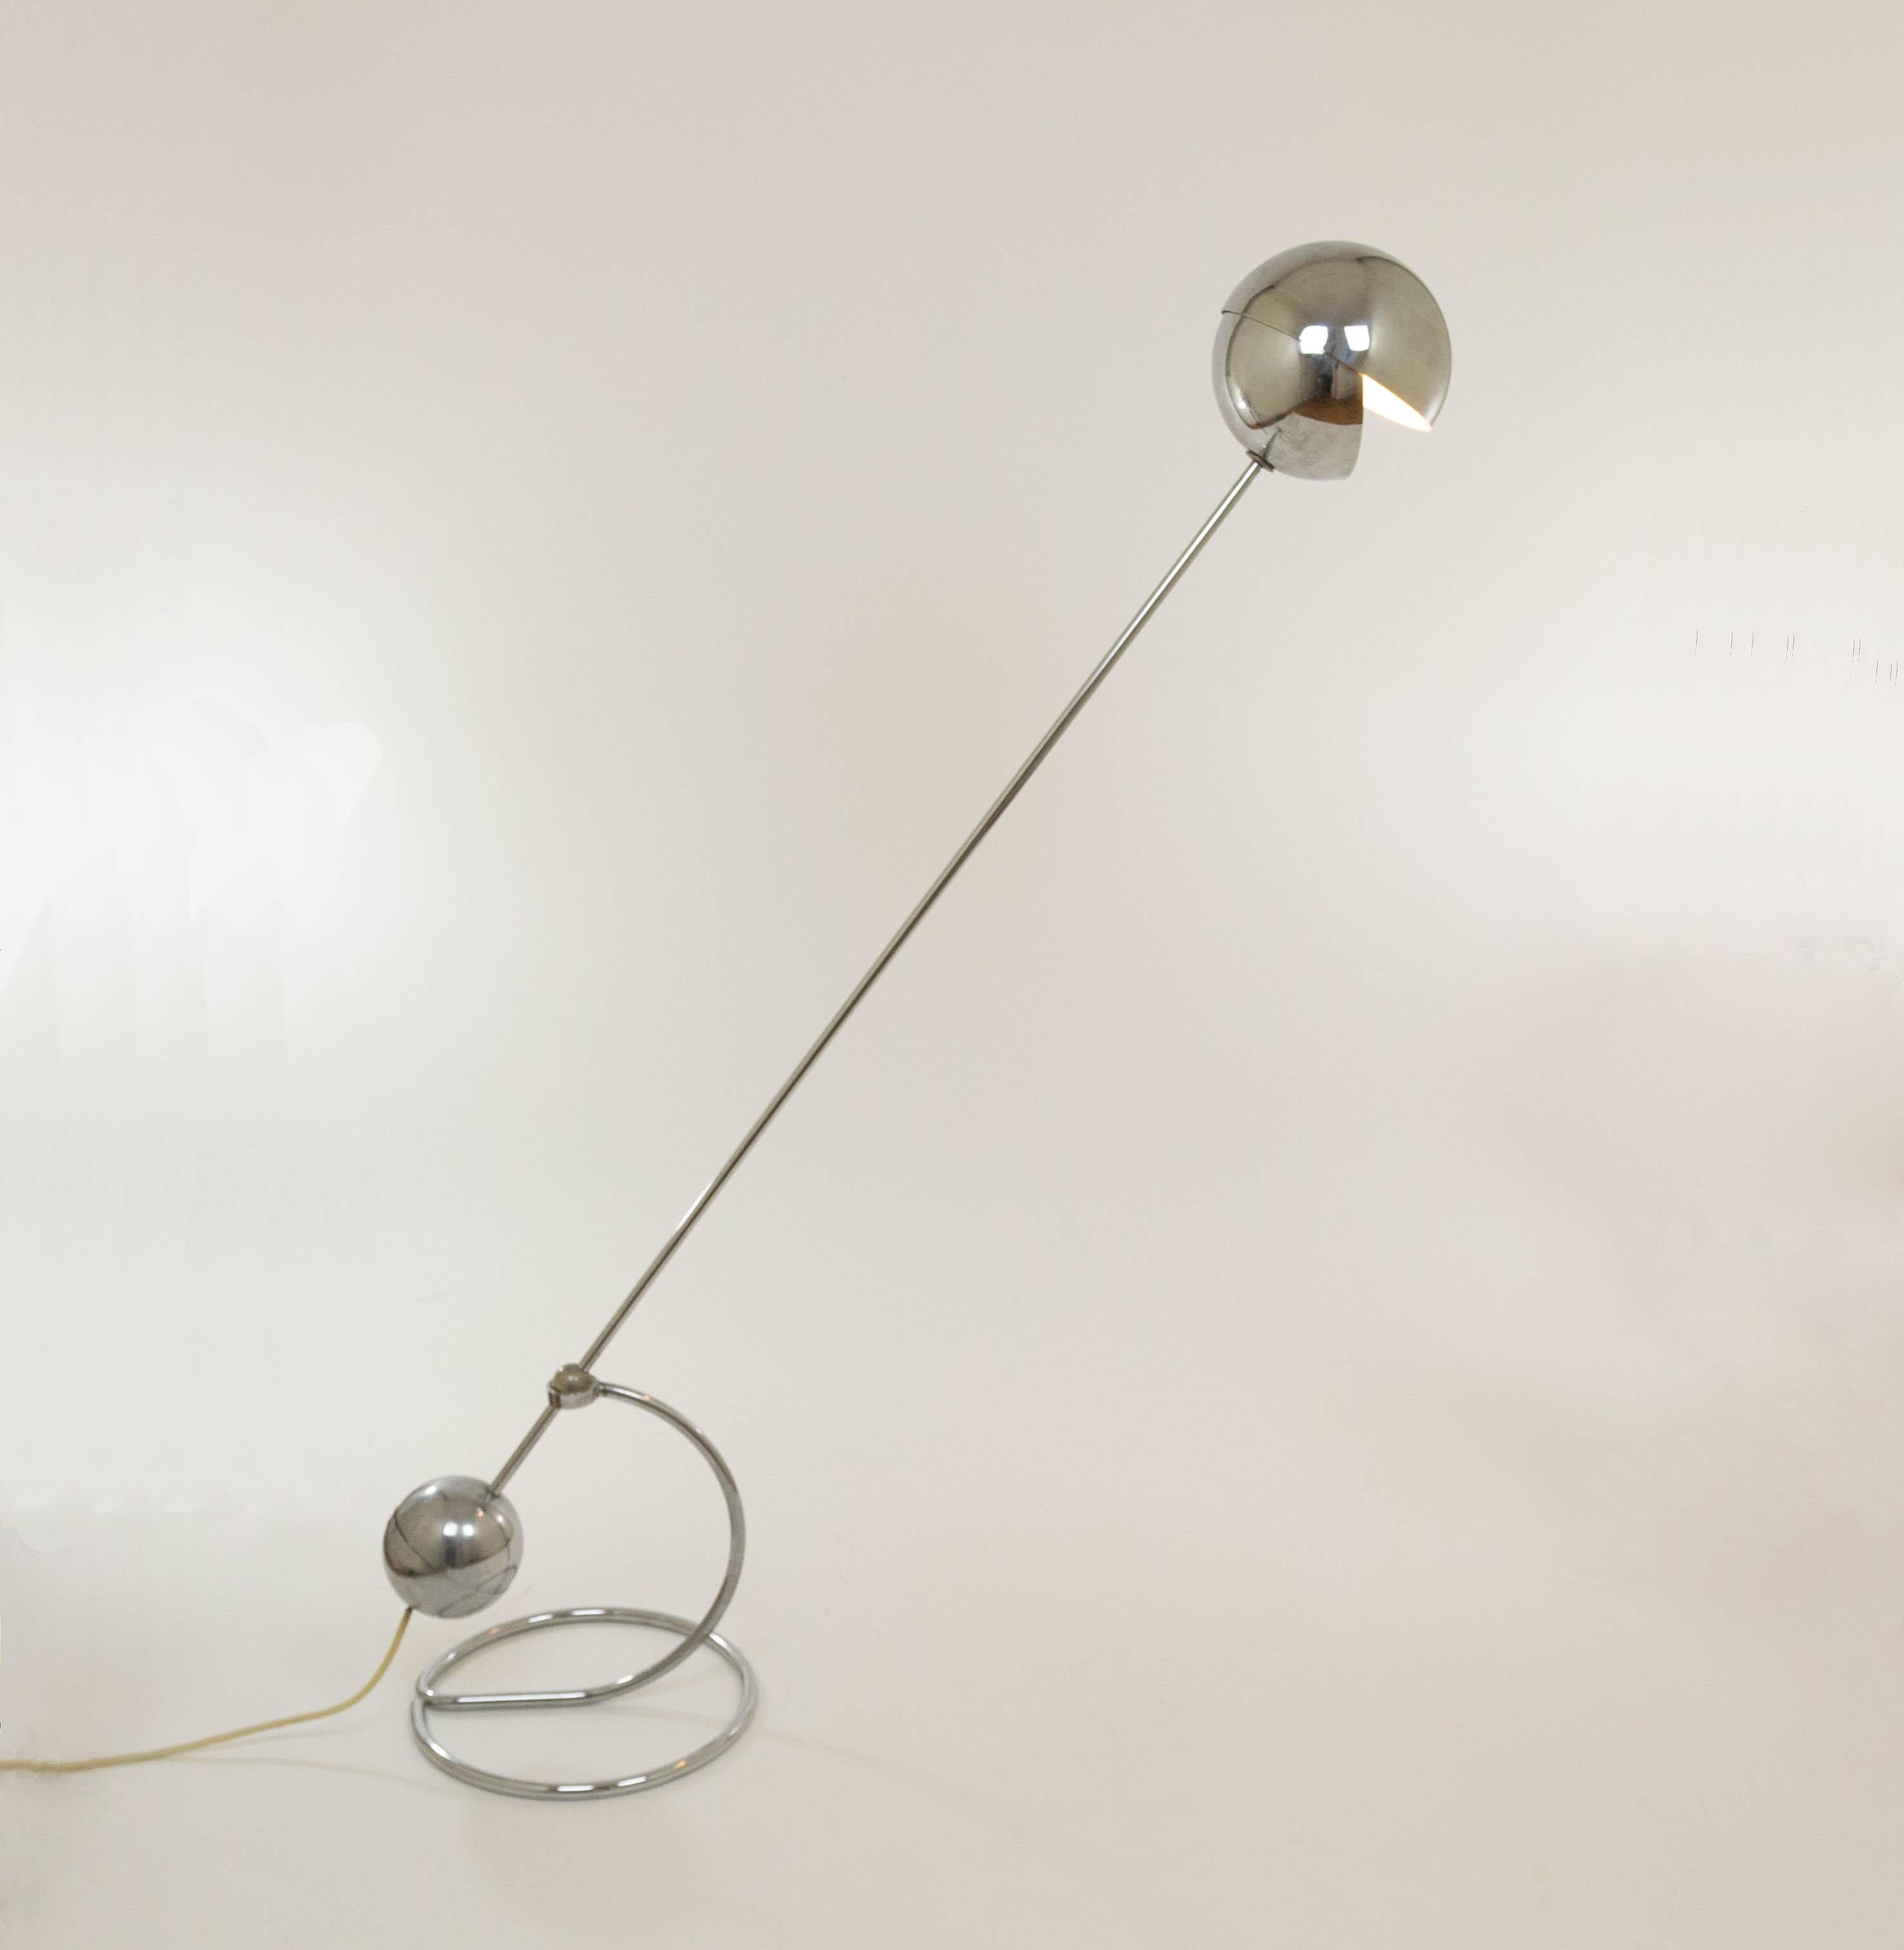 Lampadaire flexible modèle 3S conçu par Paolo Tilche en 1961 et produit par Sirrah.

La lampe est dotée d'un abat-jour sphérique et d'une base assez lourde, également sphérique, qui sert de contrepoids. Le lampadaire 3S est réglable autour de